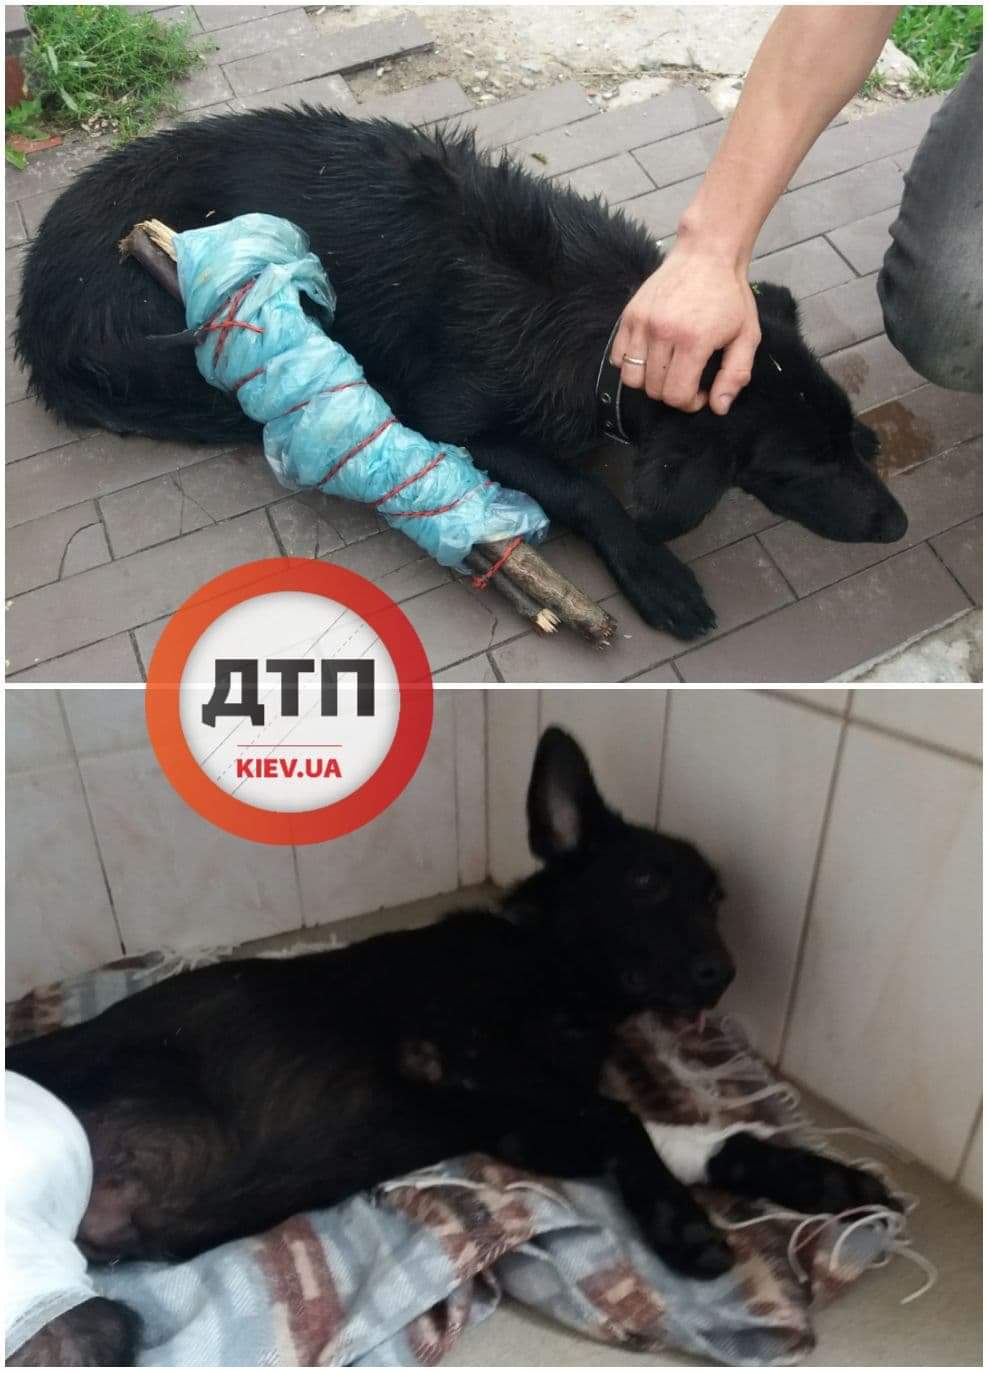 Чудесная история спасения: в Киеве на лесном массиве автомобиль переехал собаку, практически оторвало заднюю лапу